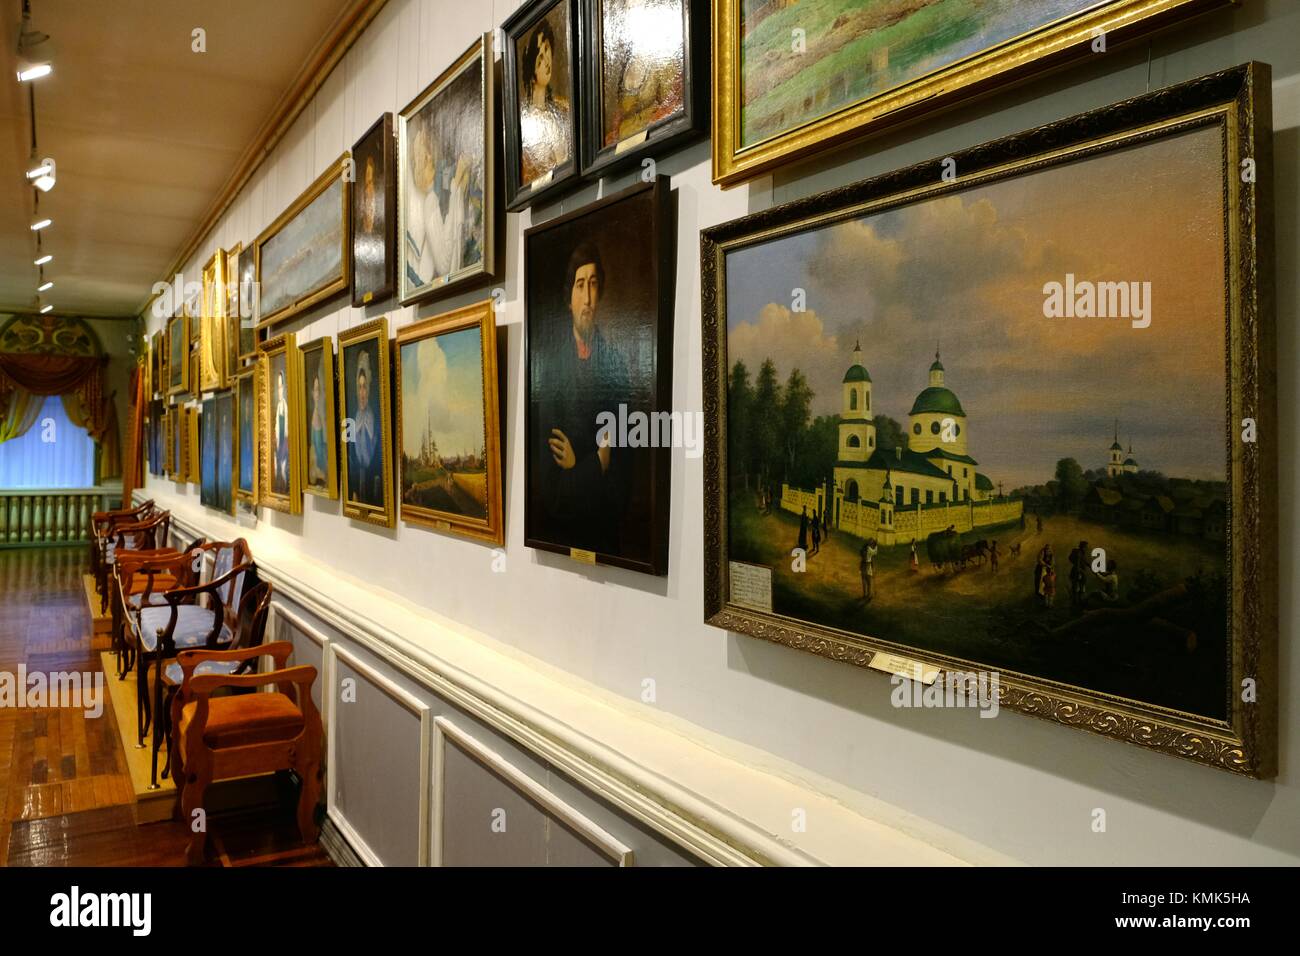 Öl malerei Halle in der Yegoryevsk Geschichte und Kunst Museum - Yegoryevsk, Moskauer Gebiet, Russland Stockfoto